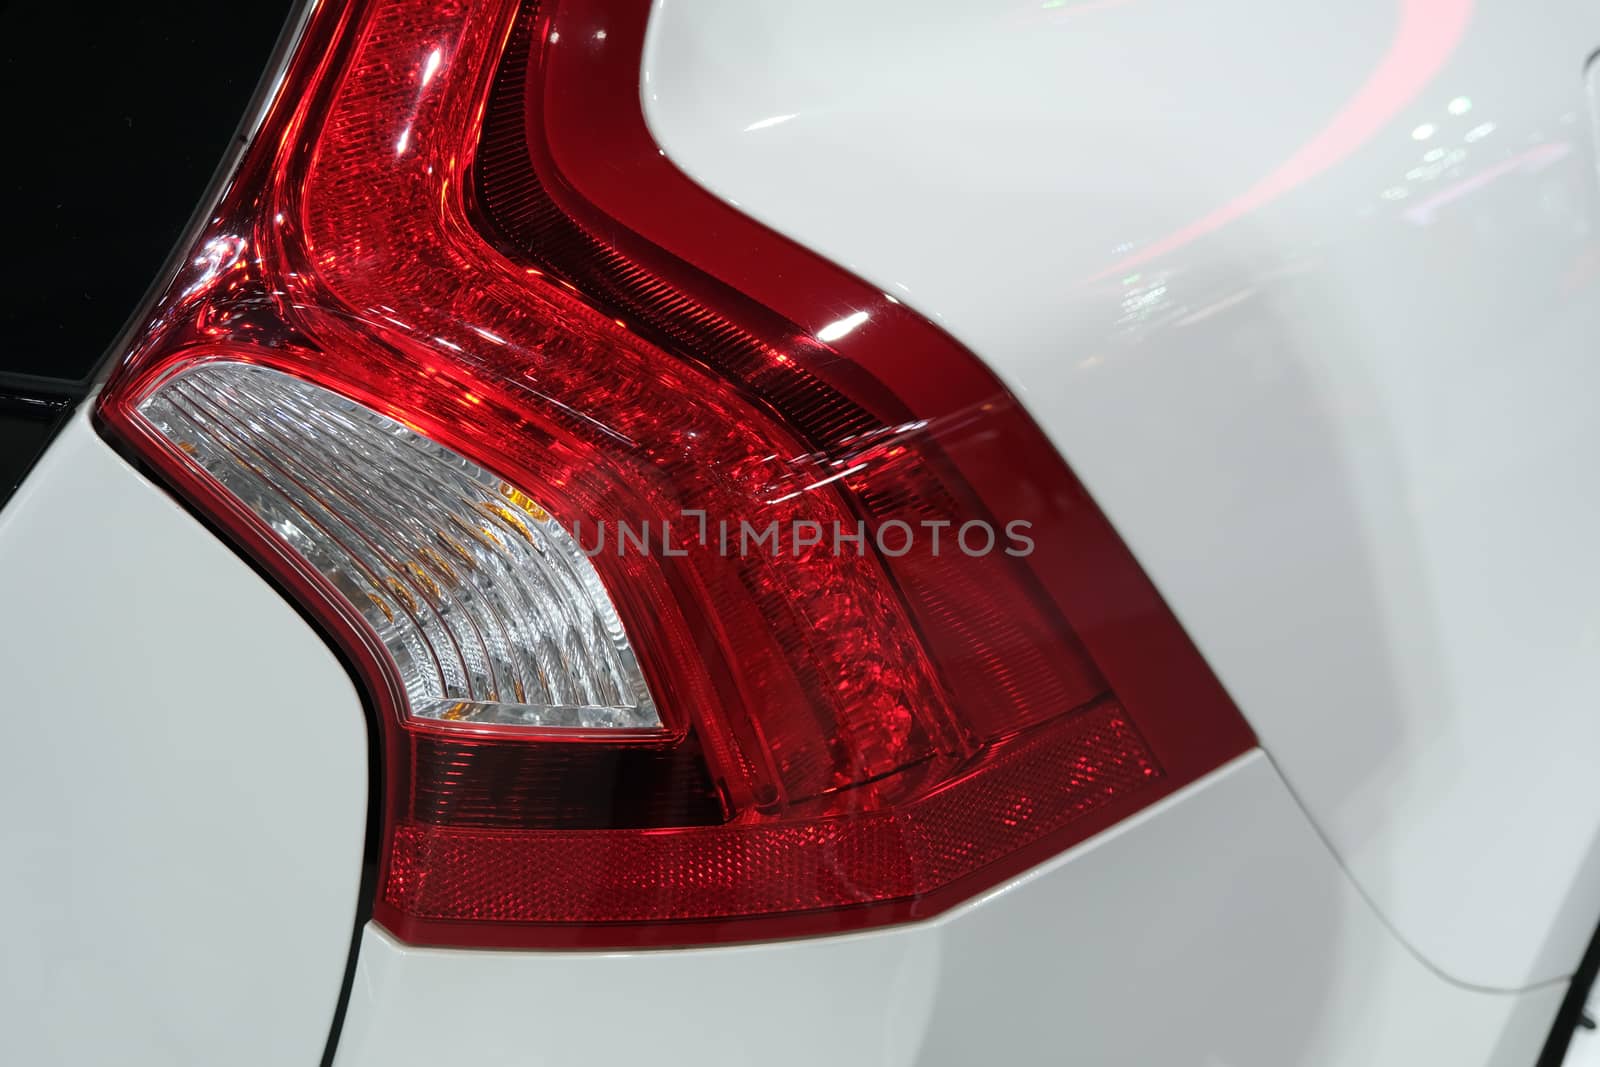 Rear light of a modern hatchback detail car by peerapixs